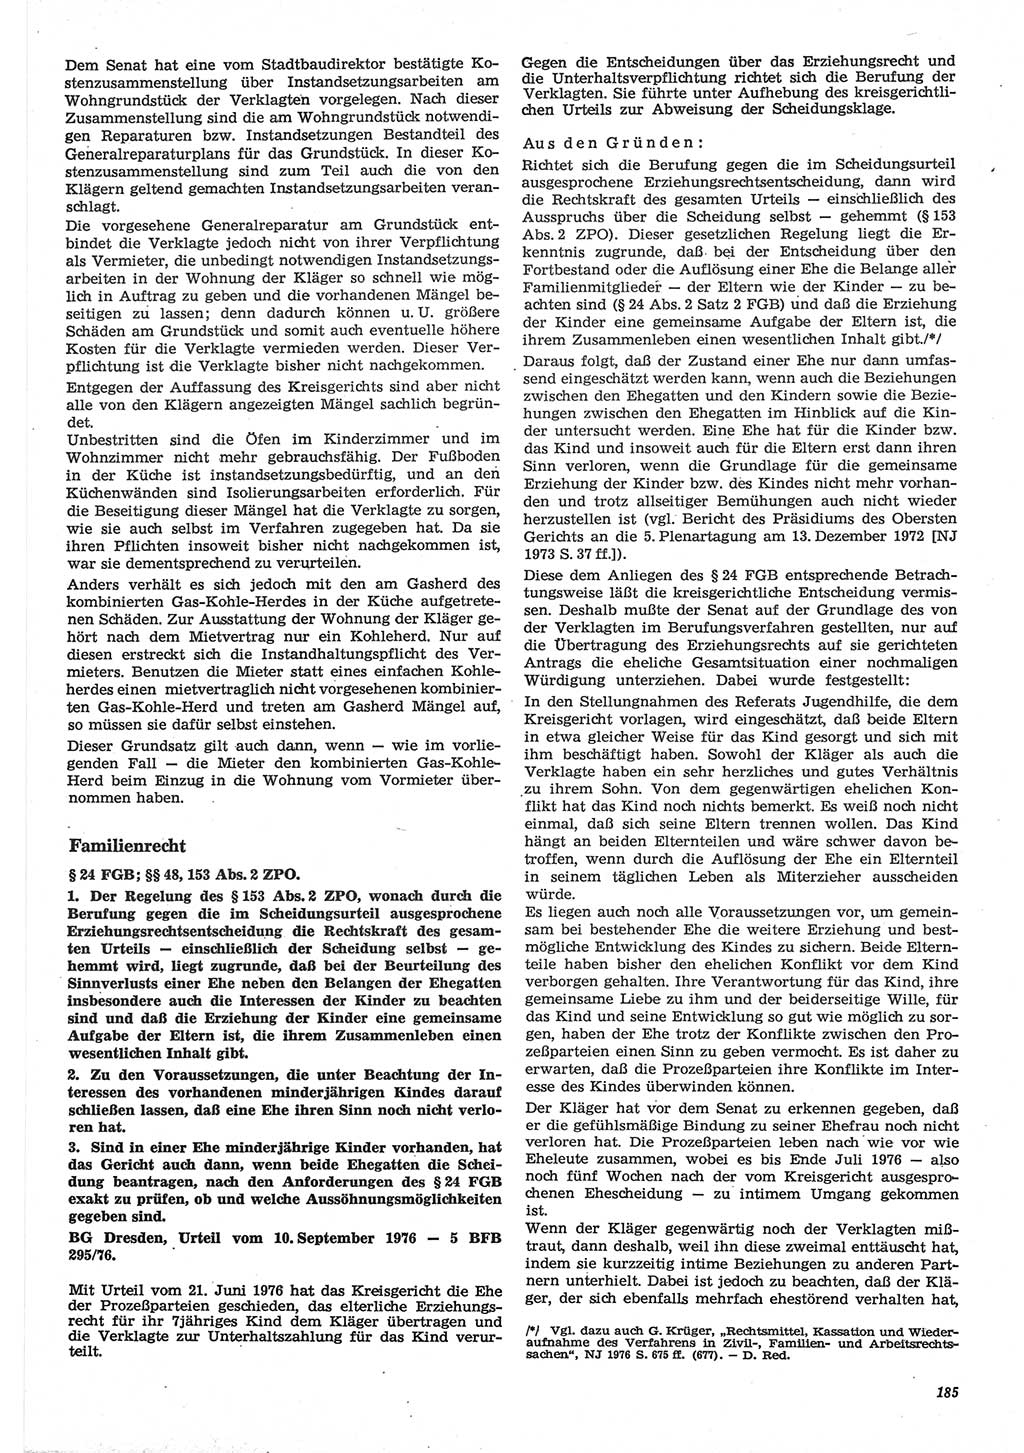 Neue Justiz (NJ), Zeitschrift für Recht und Rechtswissenschaft-Zeitschrift, sozialistisches Recht und Gesetzlichkeit, 31. Jahrgang 1977, Seite 185 (NJ DDR 1977, S. 185)